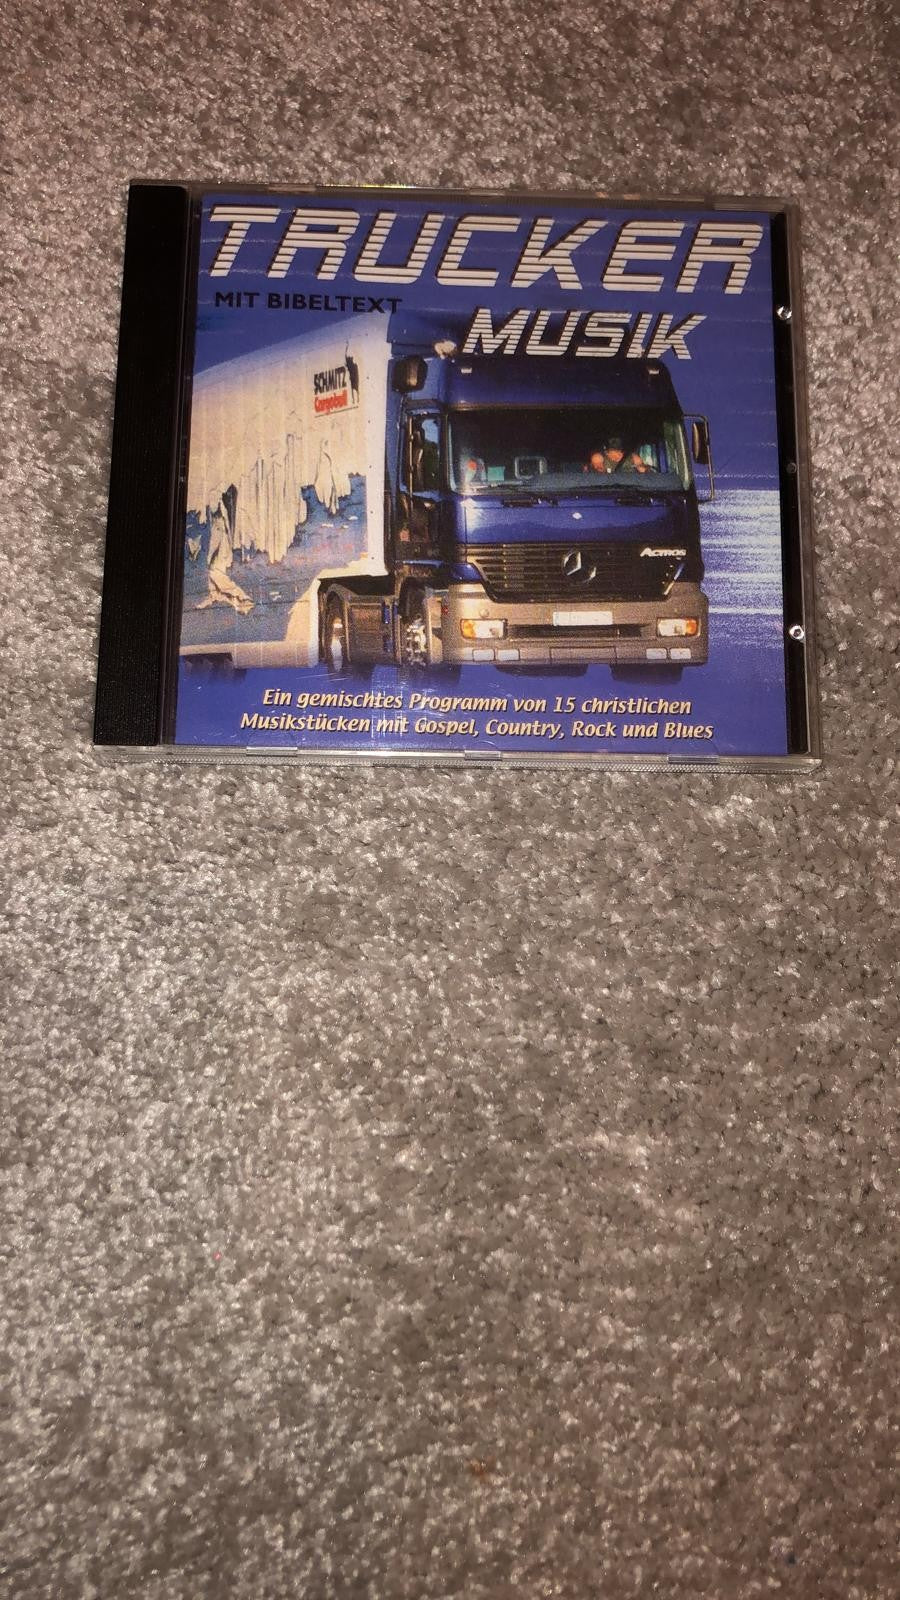 Trucker Musik CD